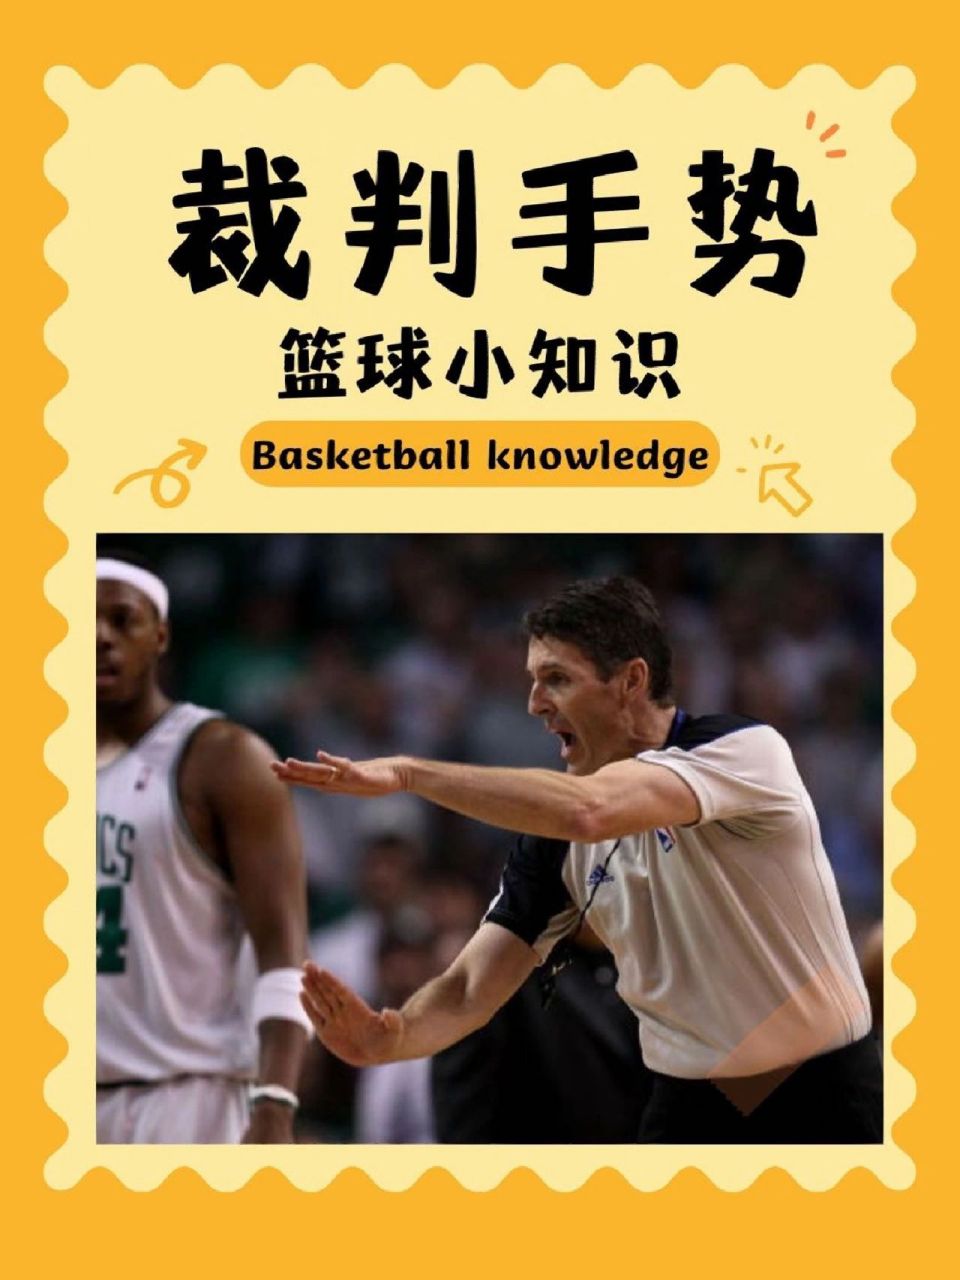 篮球手势动作教学图片